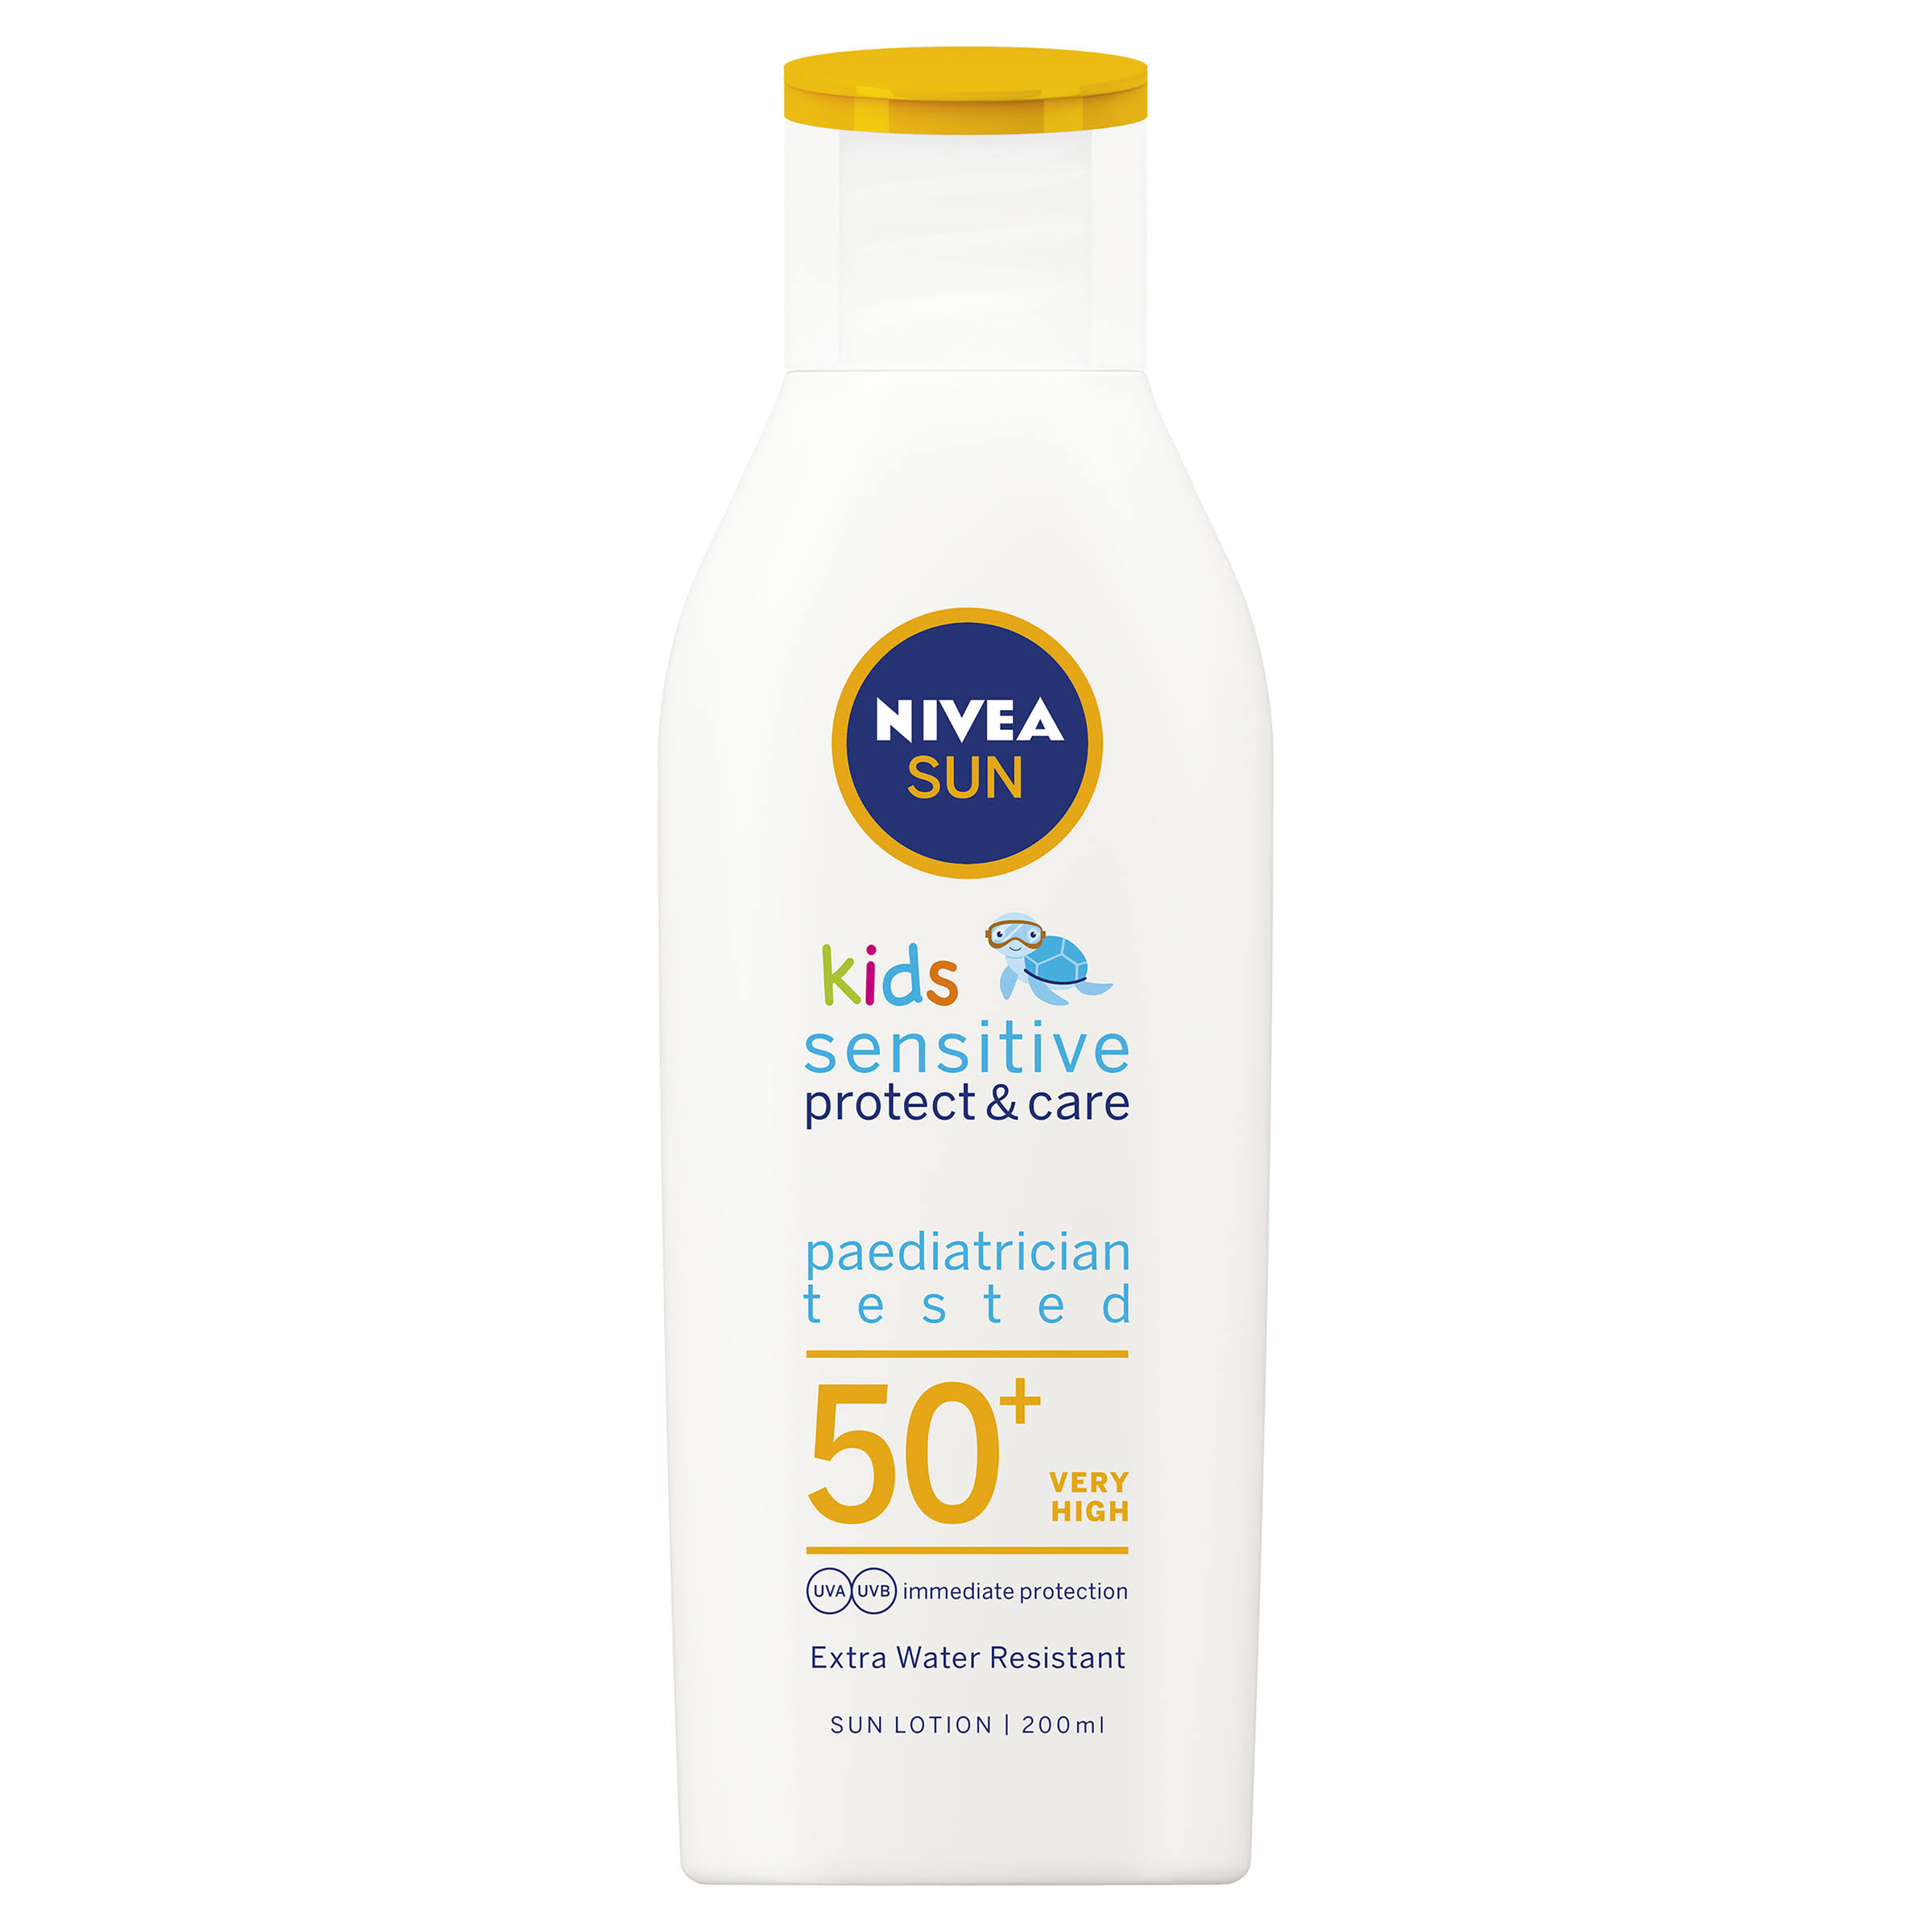 Nivea Sun Kids Sensitive Protect and Care SPF 50 Plus Sun Lotion - 200ml